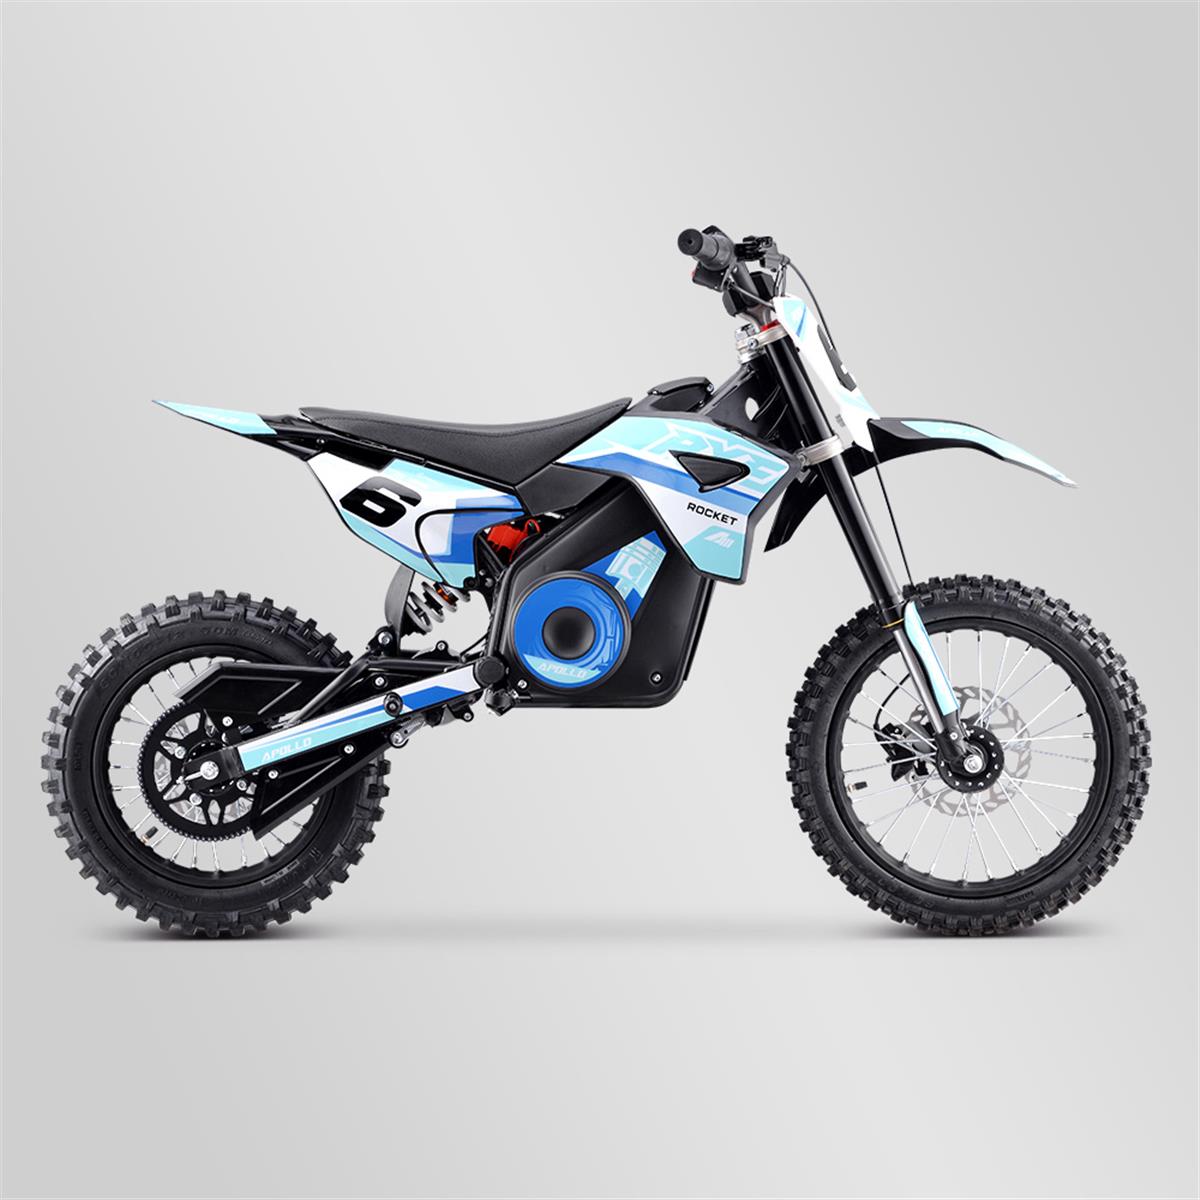 dirt-bike-enfant-apollo-rfz-rocket-1300w-2021-6-bleu